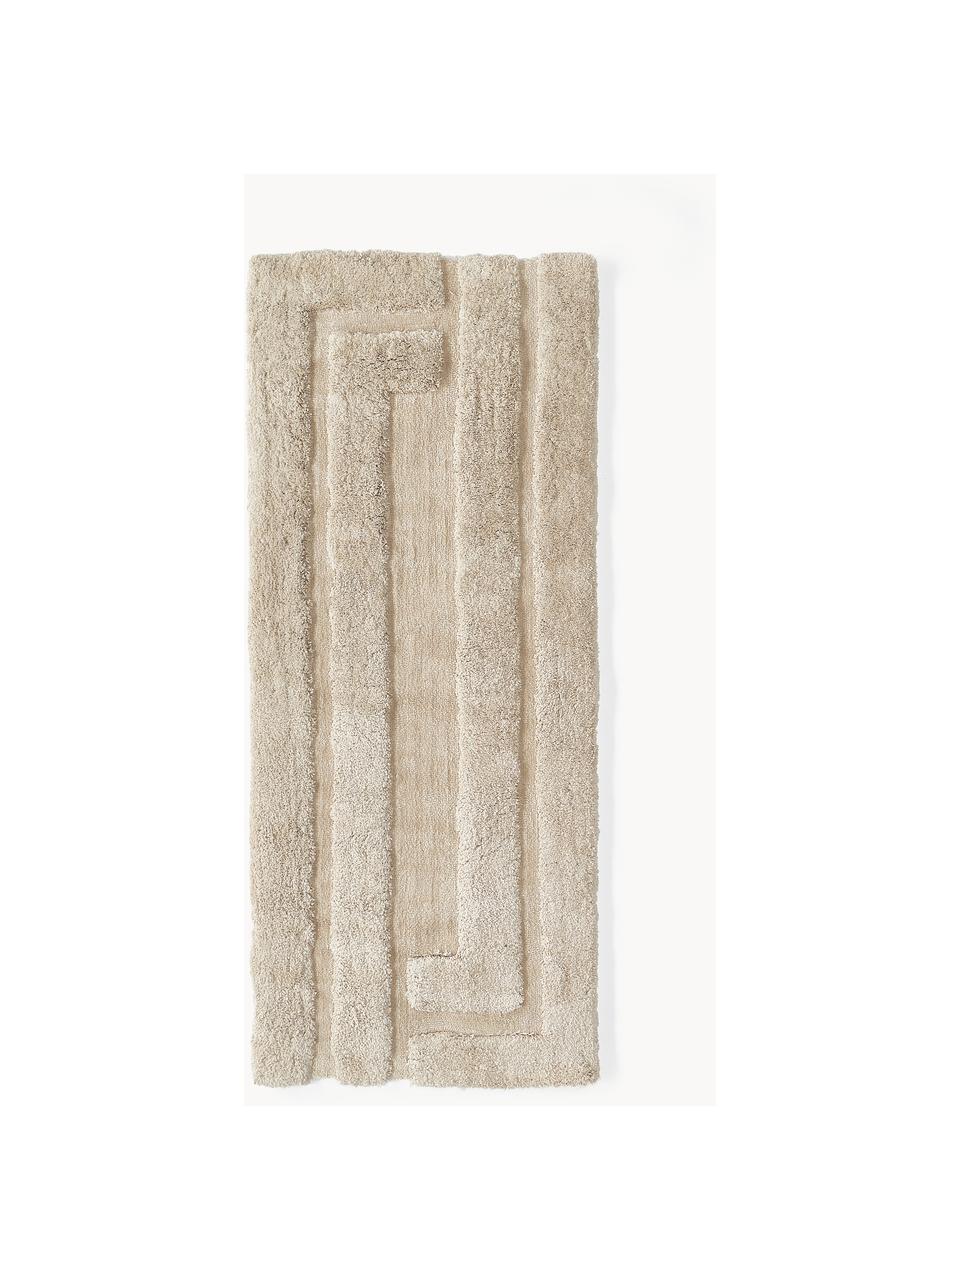 Tapis d'entrée moelleux à poils longs texturé Genève, Beige clair, larg. 80 x long. 200 cm